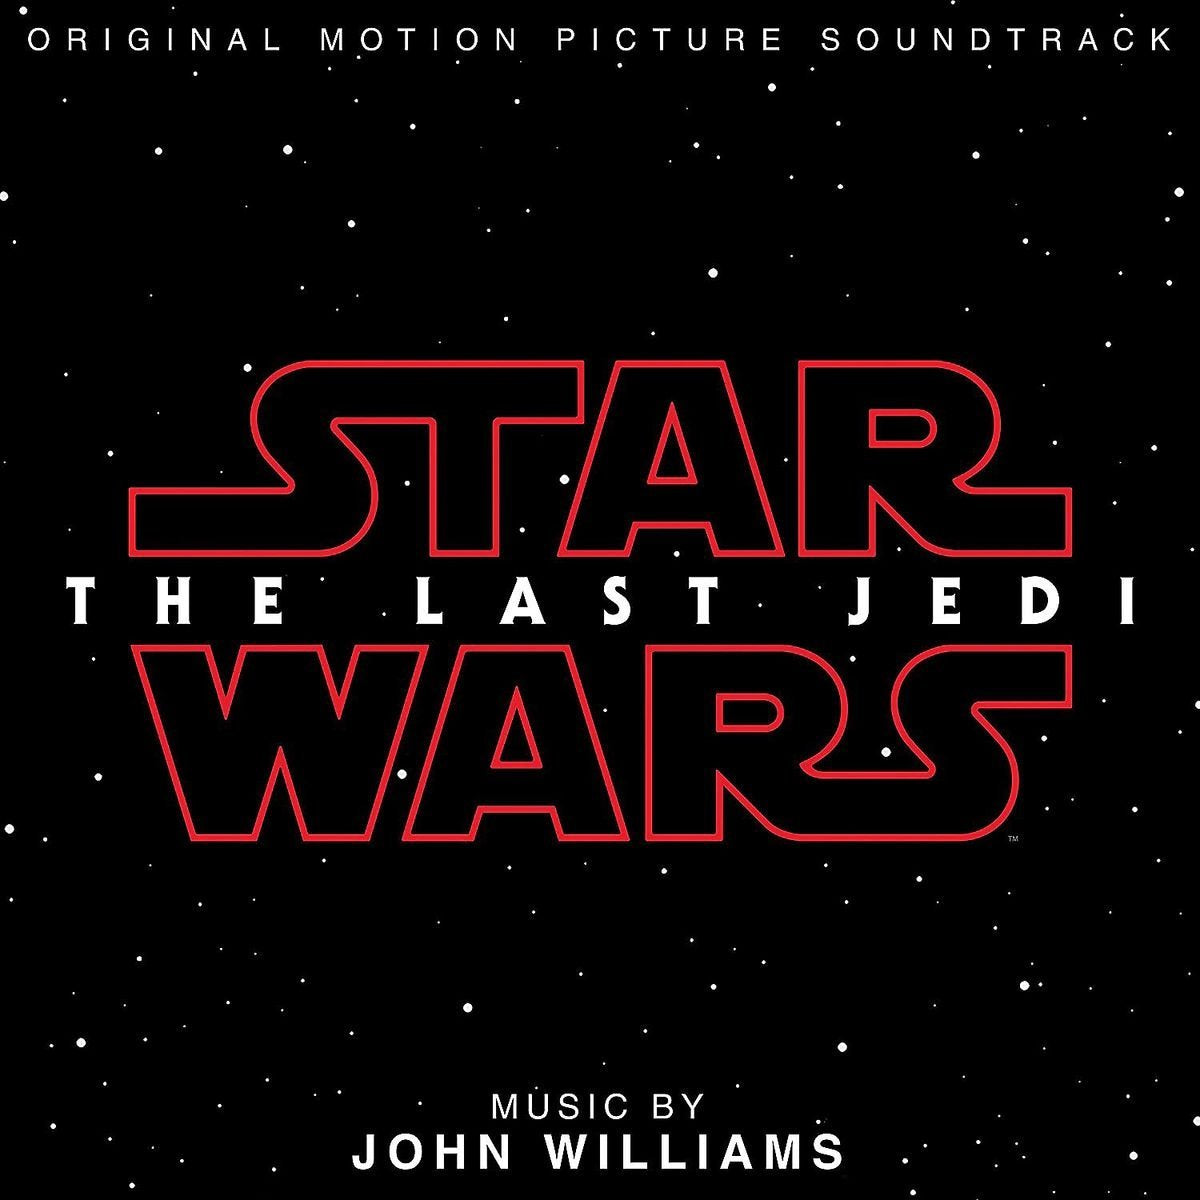 Star Wars - The Last Jedi - Ost [Vinyl]